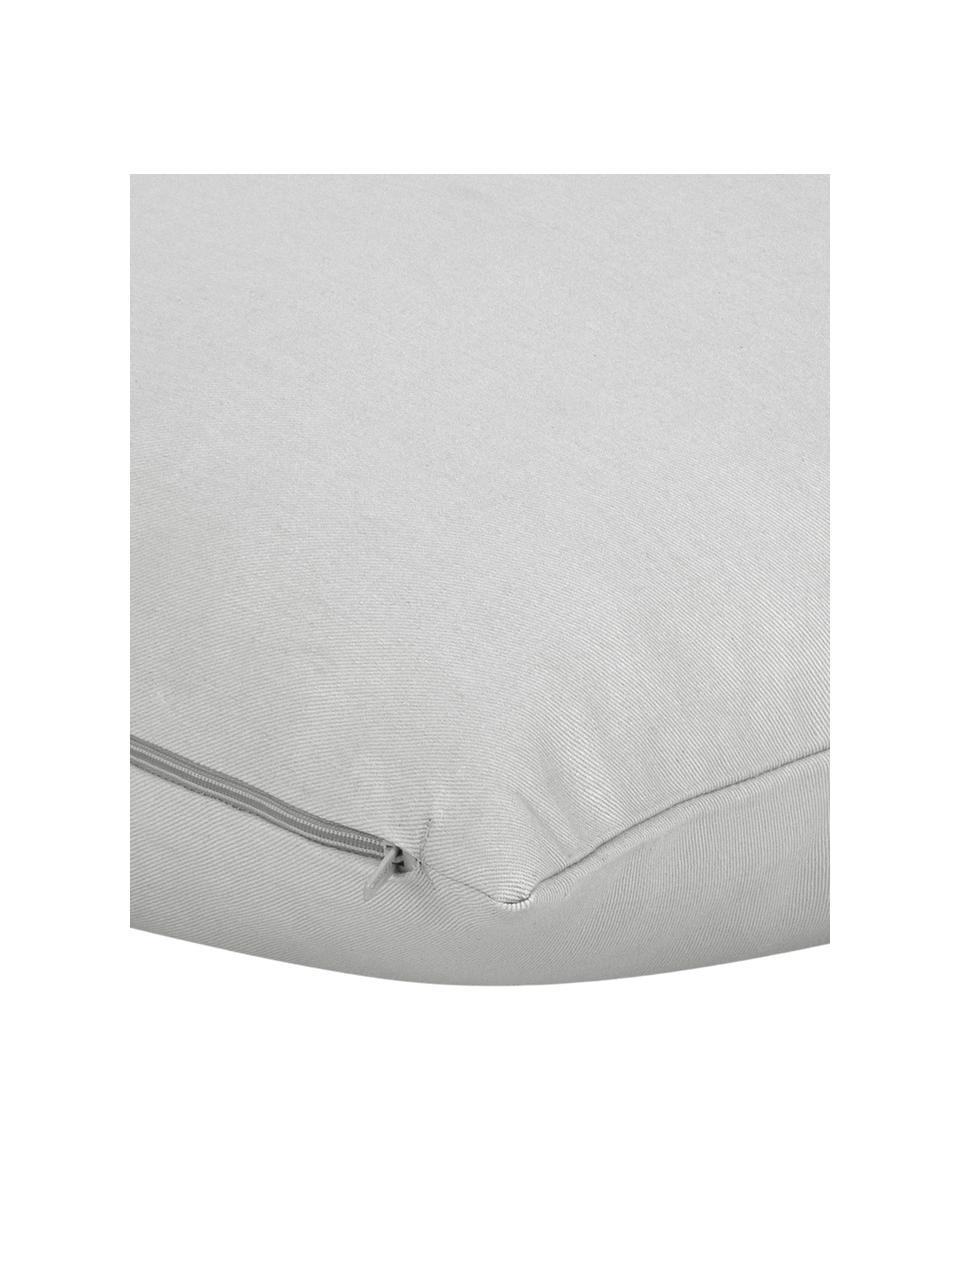 Poszewka na poduszkę z bawełny Mads, 100% bawełna, Jasny szary, S 40 x D 40 cm